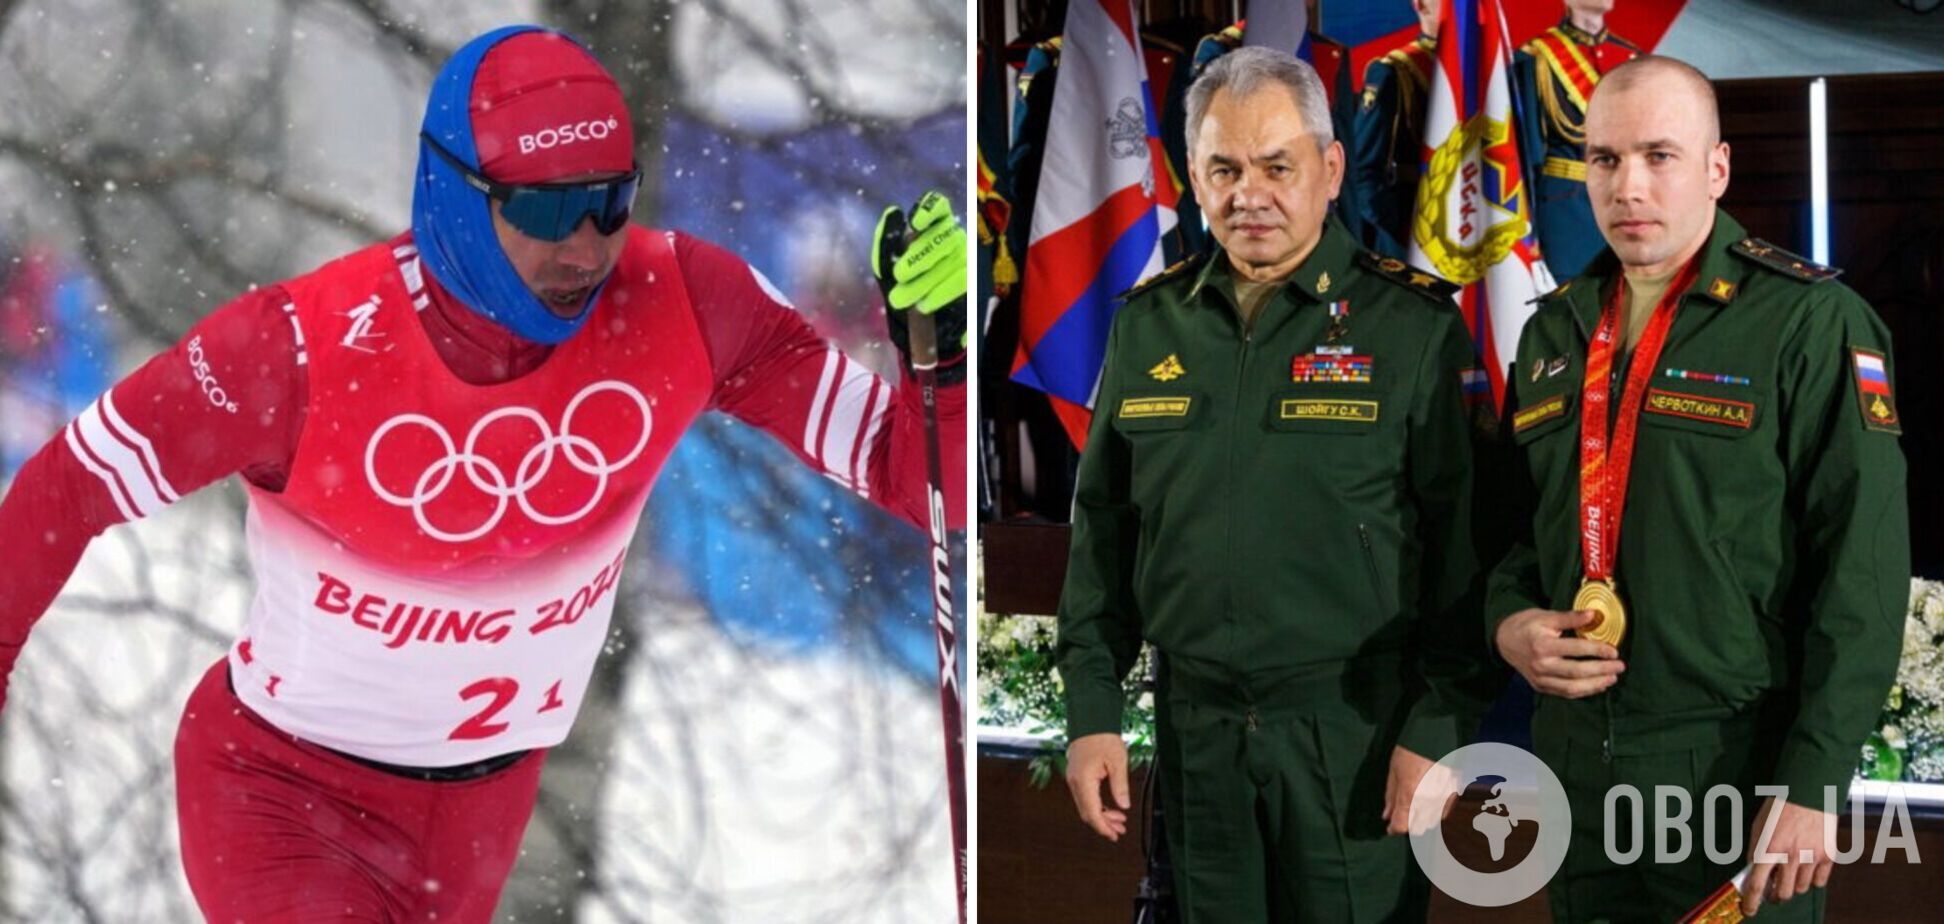 'Гасят' именно нас': чемпион Олимпиады из РФ пожаловался на требования МОК, забыв о войне в Украине